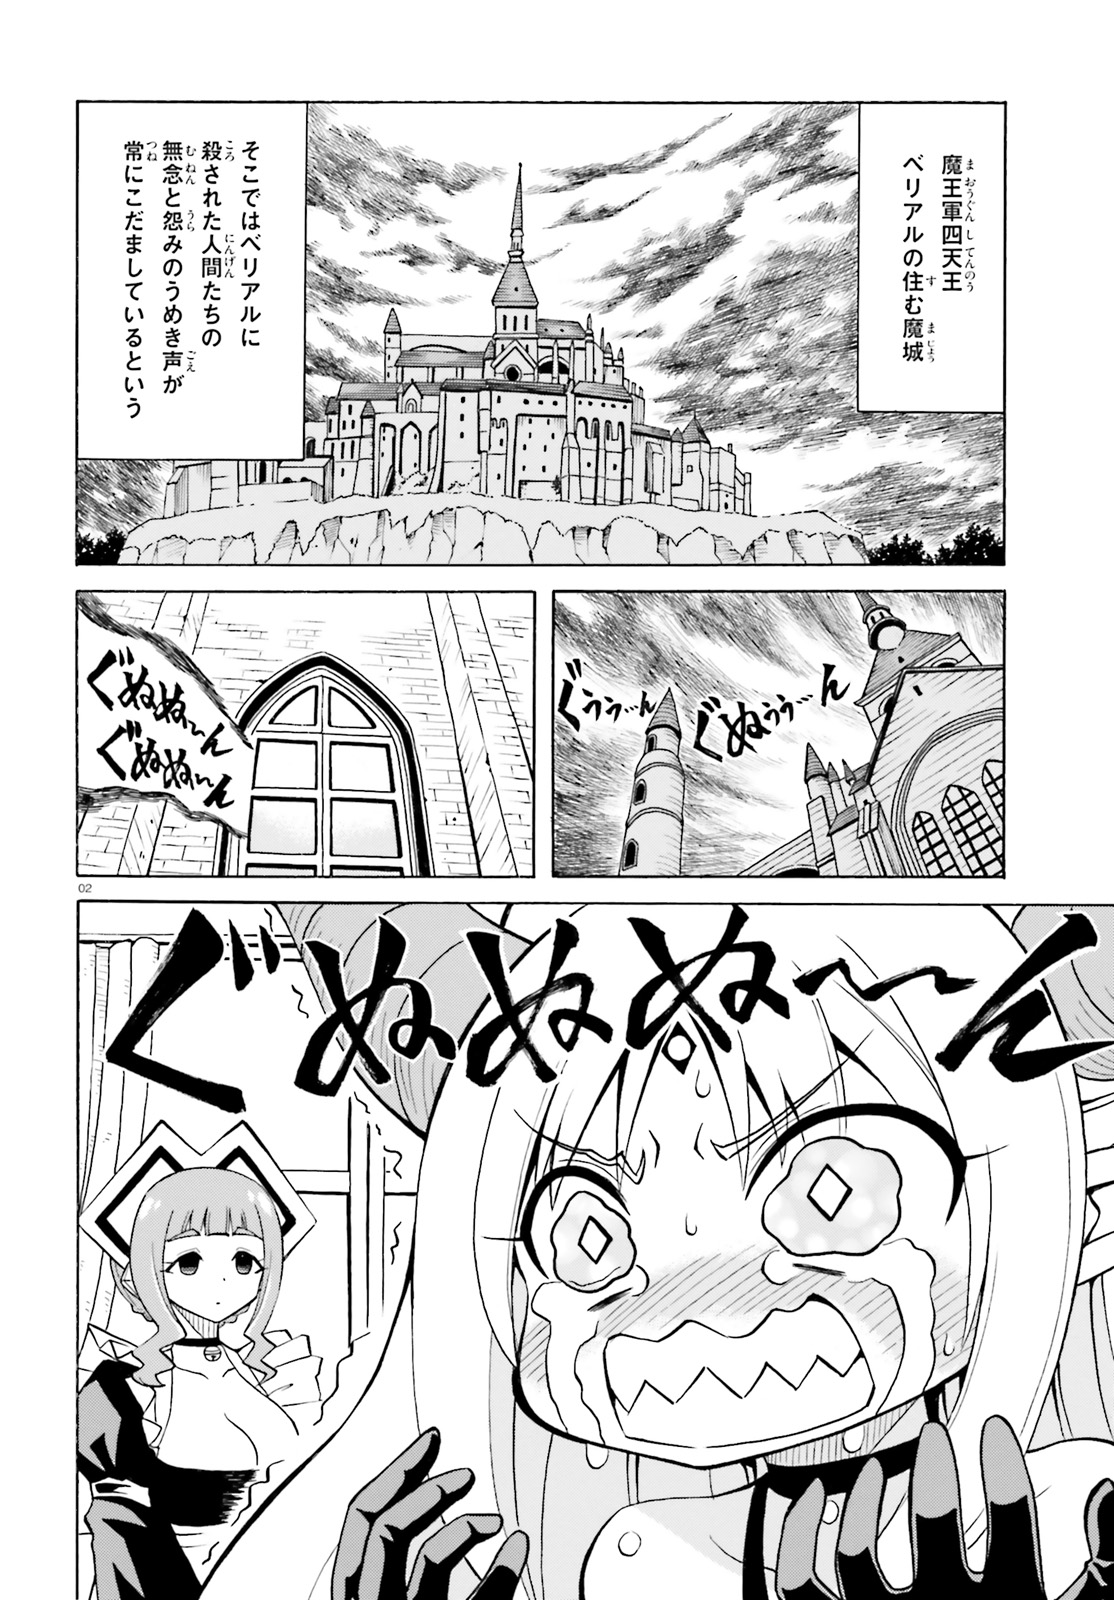 Beriaru-sama wa Shitenno no Naka Demo × × - Chapter 4 - Page 2